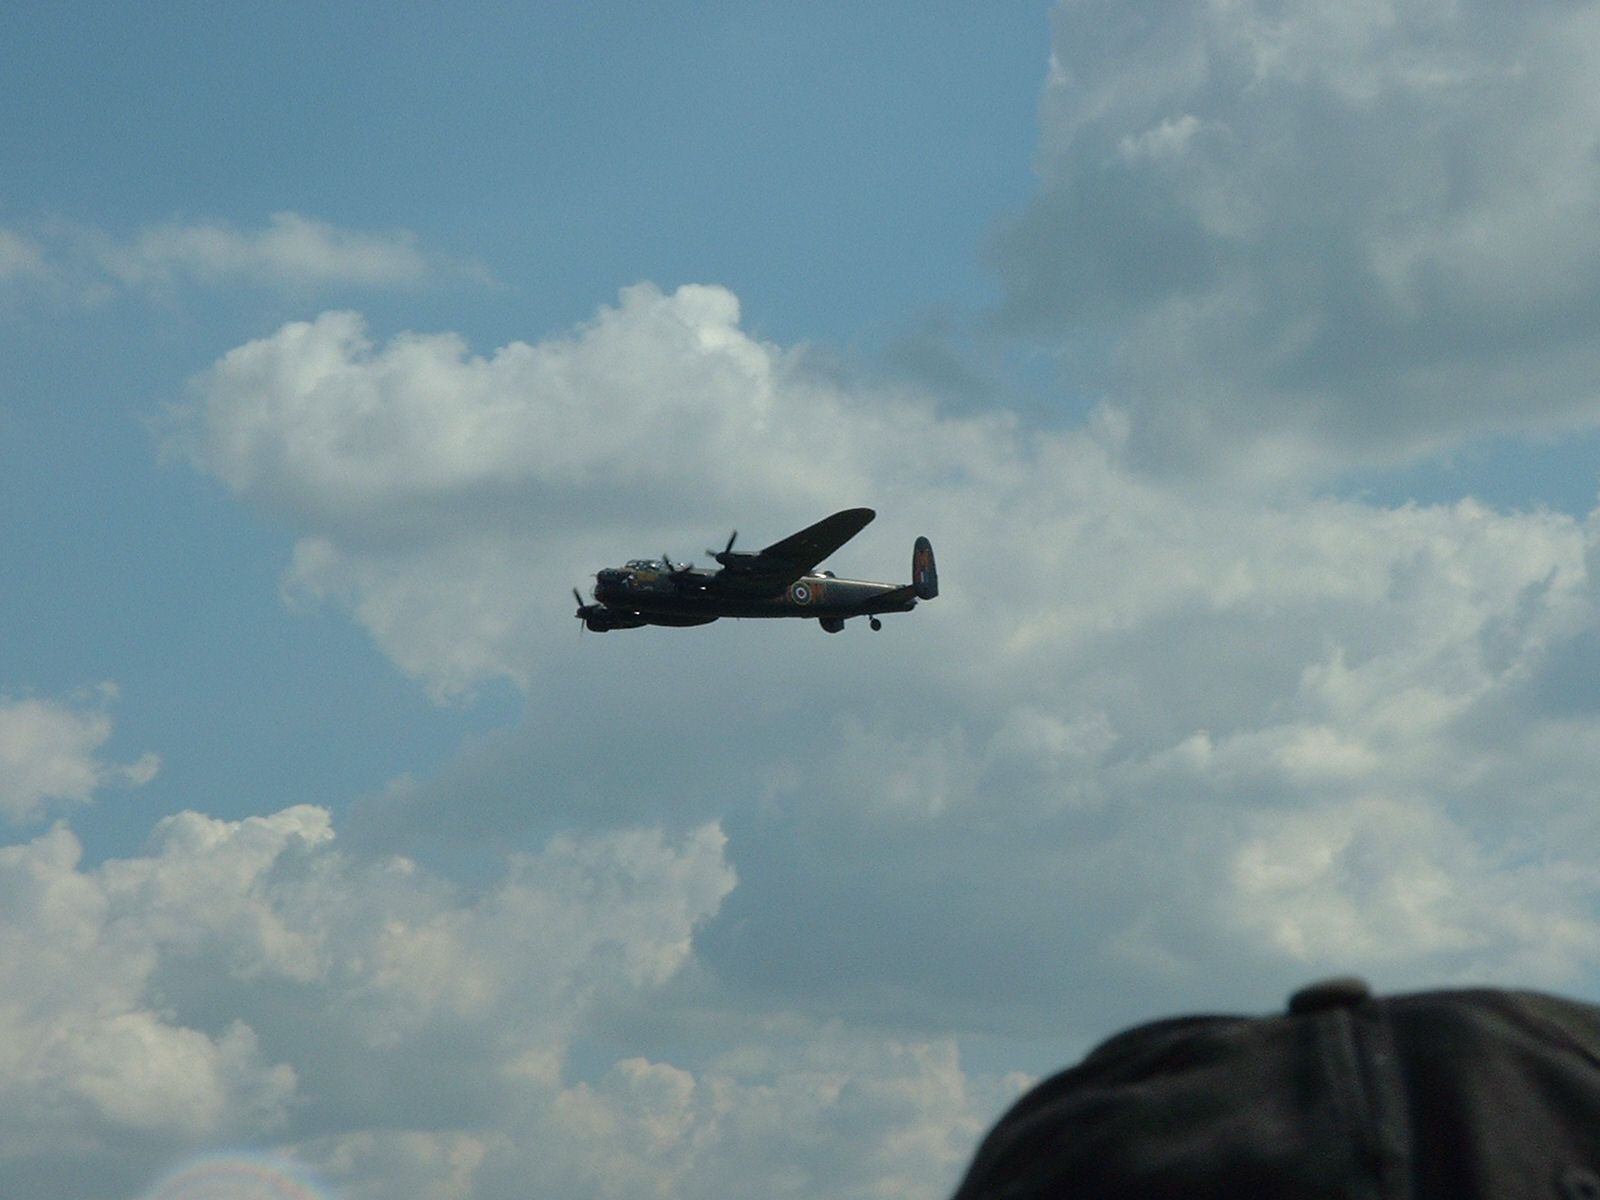 BBMF Lancaster in Flight